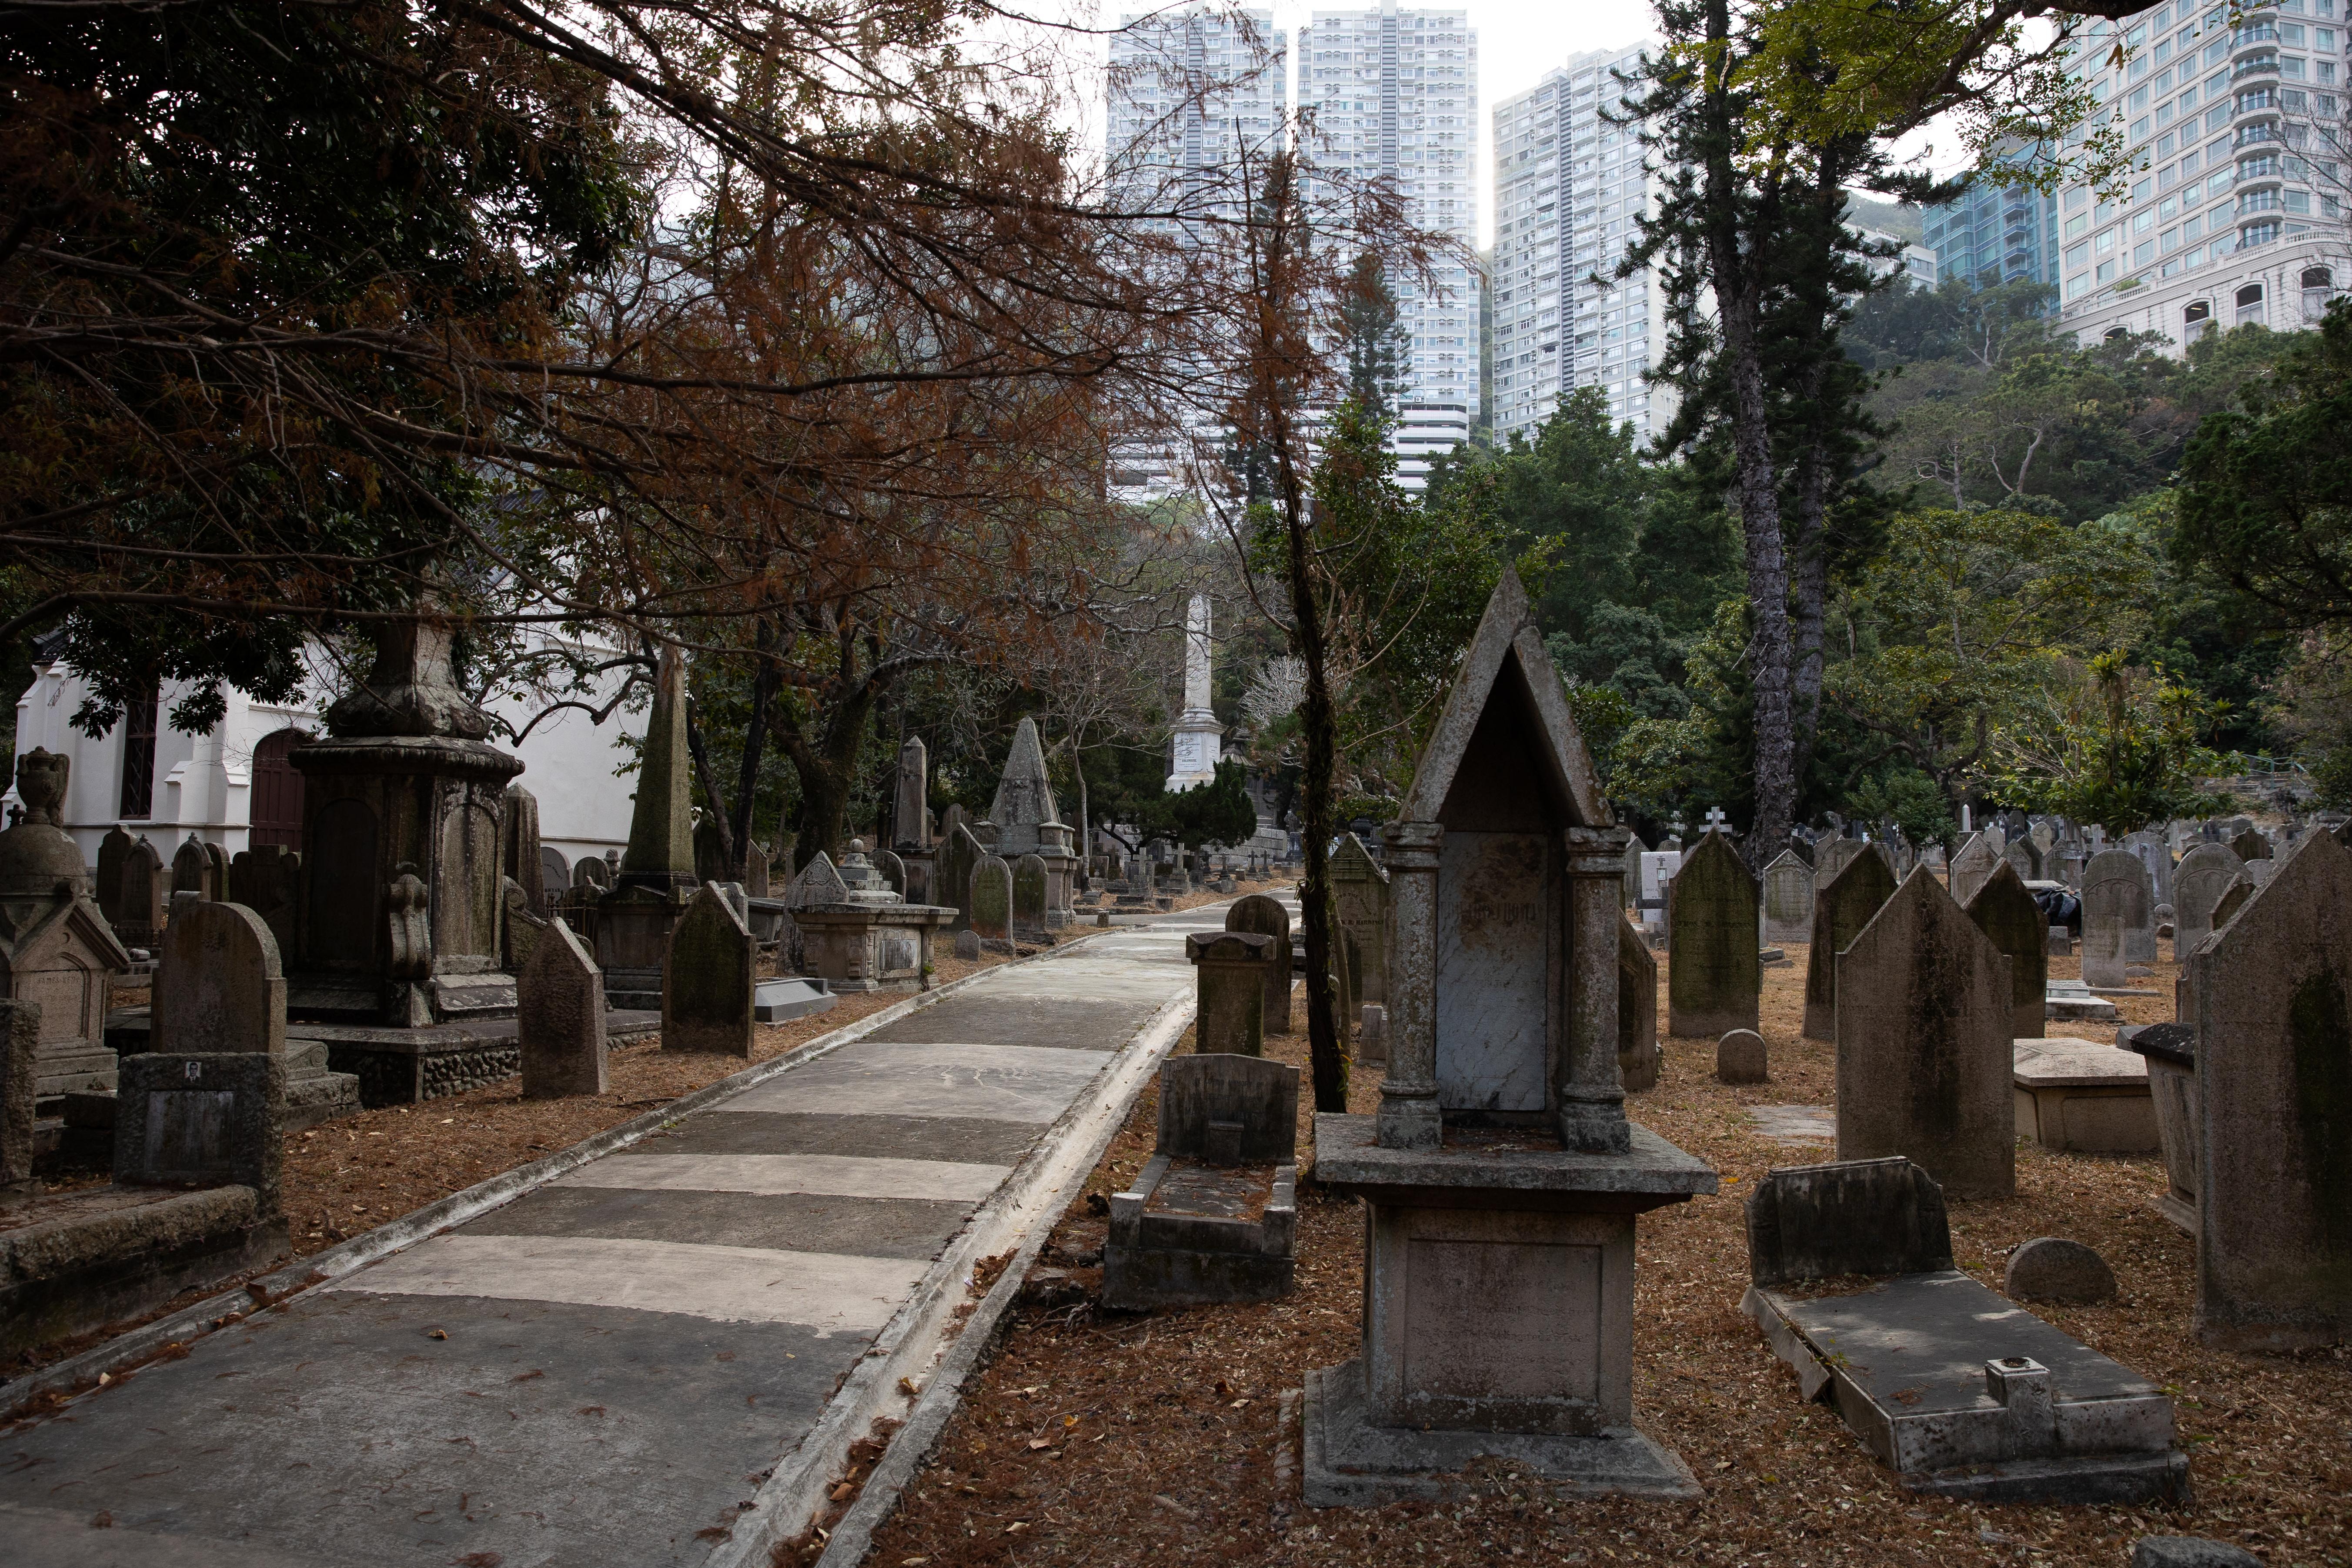 香港墳場屬本港早期香港墓園，由當年英國政府引入歐洲十九世紀的花園墓園概念來港建立，當時由英國聖公會管理，初期沒有定名，由於較多外國人落葬，當年又稱為「紅毛墳場」。(資料圖片)